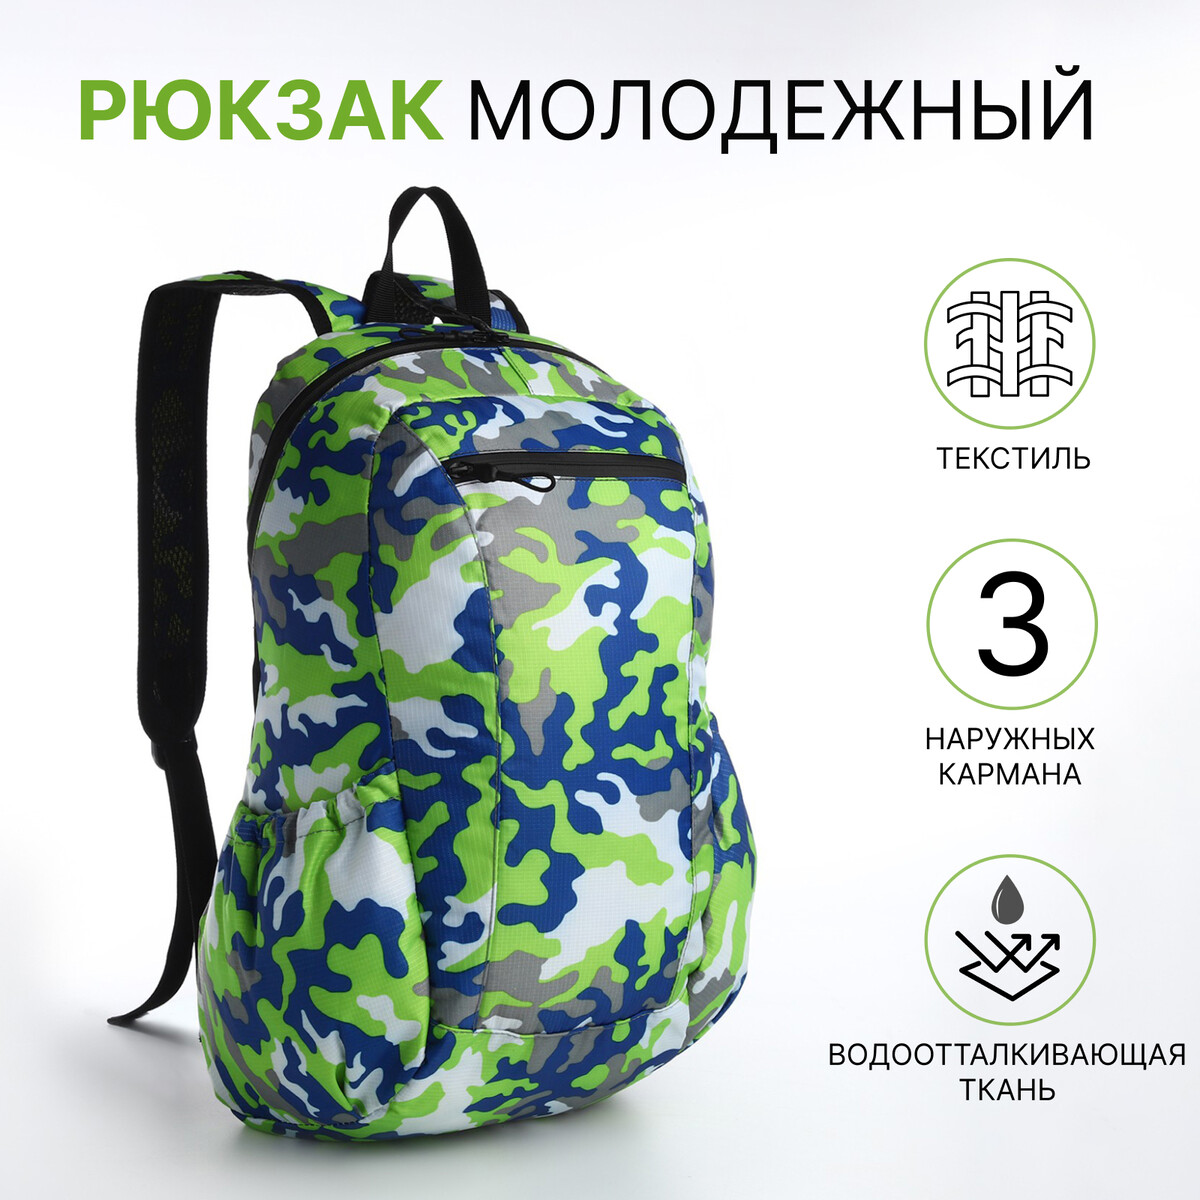 Рюкзак молодежный, водонепроницаемый на молнии, 3 кармана, цвет зеленый рюкзак школьный из текстиля на молнии 3 кармана пенал зеленый